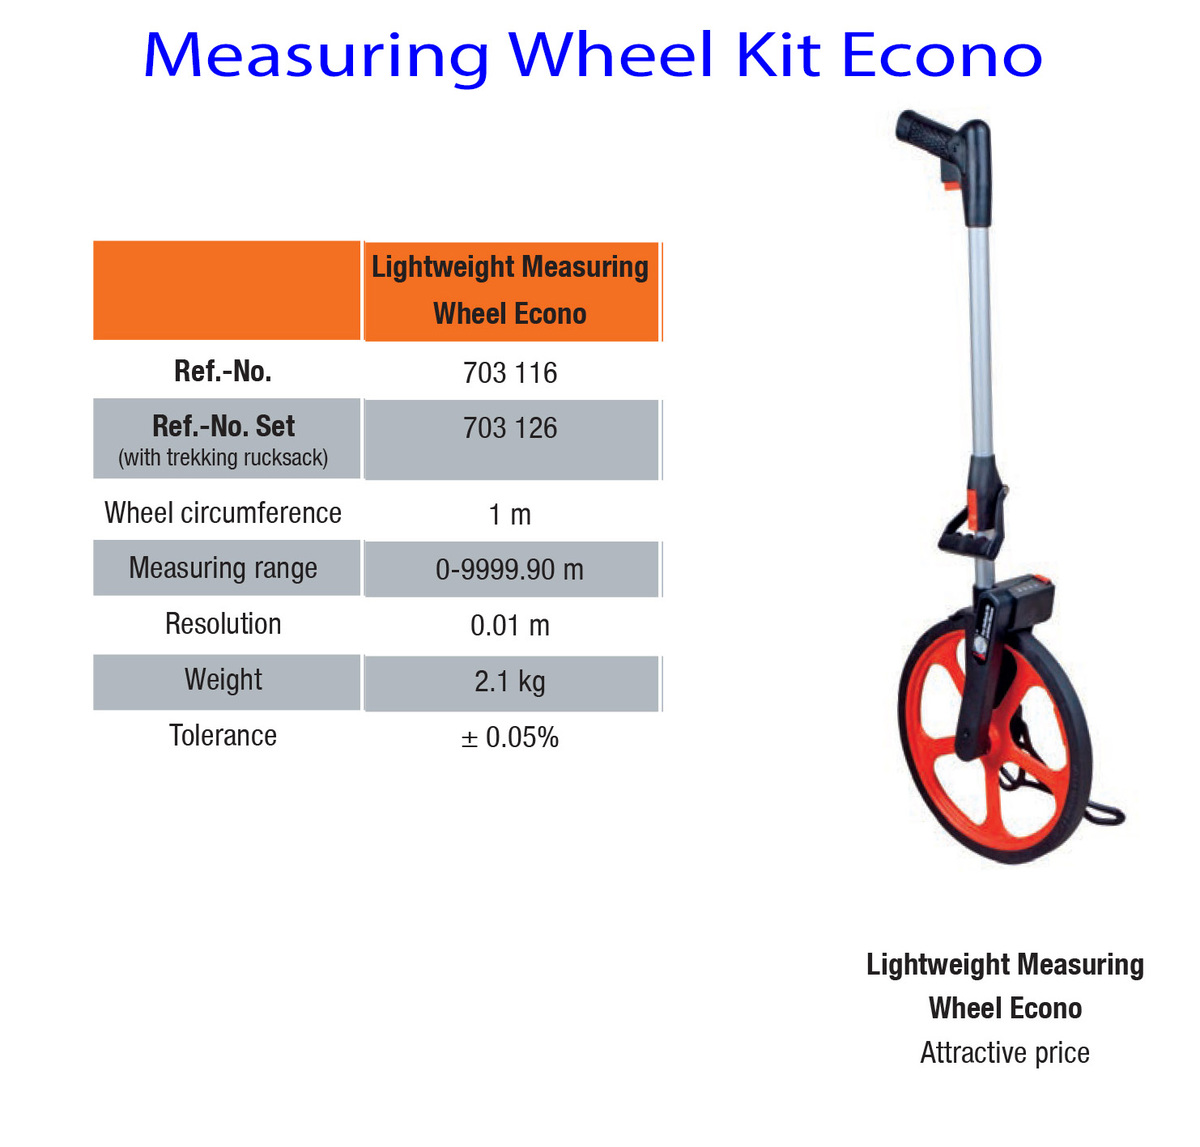 Measuring-Wheel-Kit-Econo.jpg#asset:7649